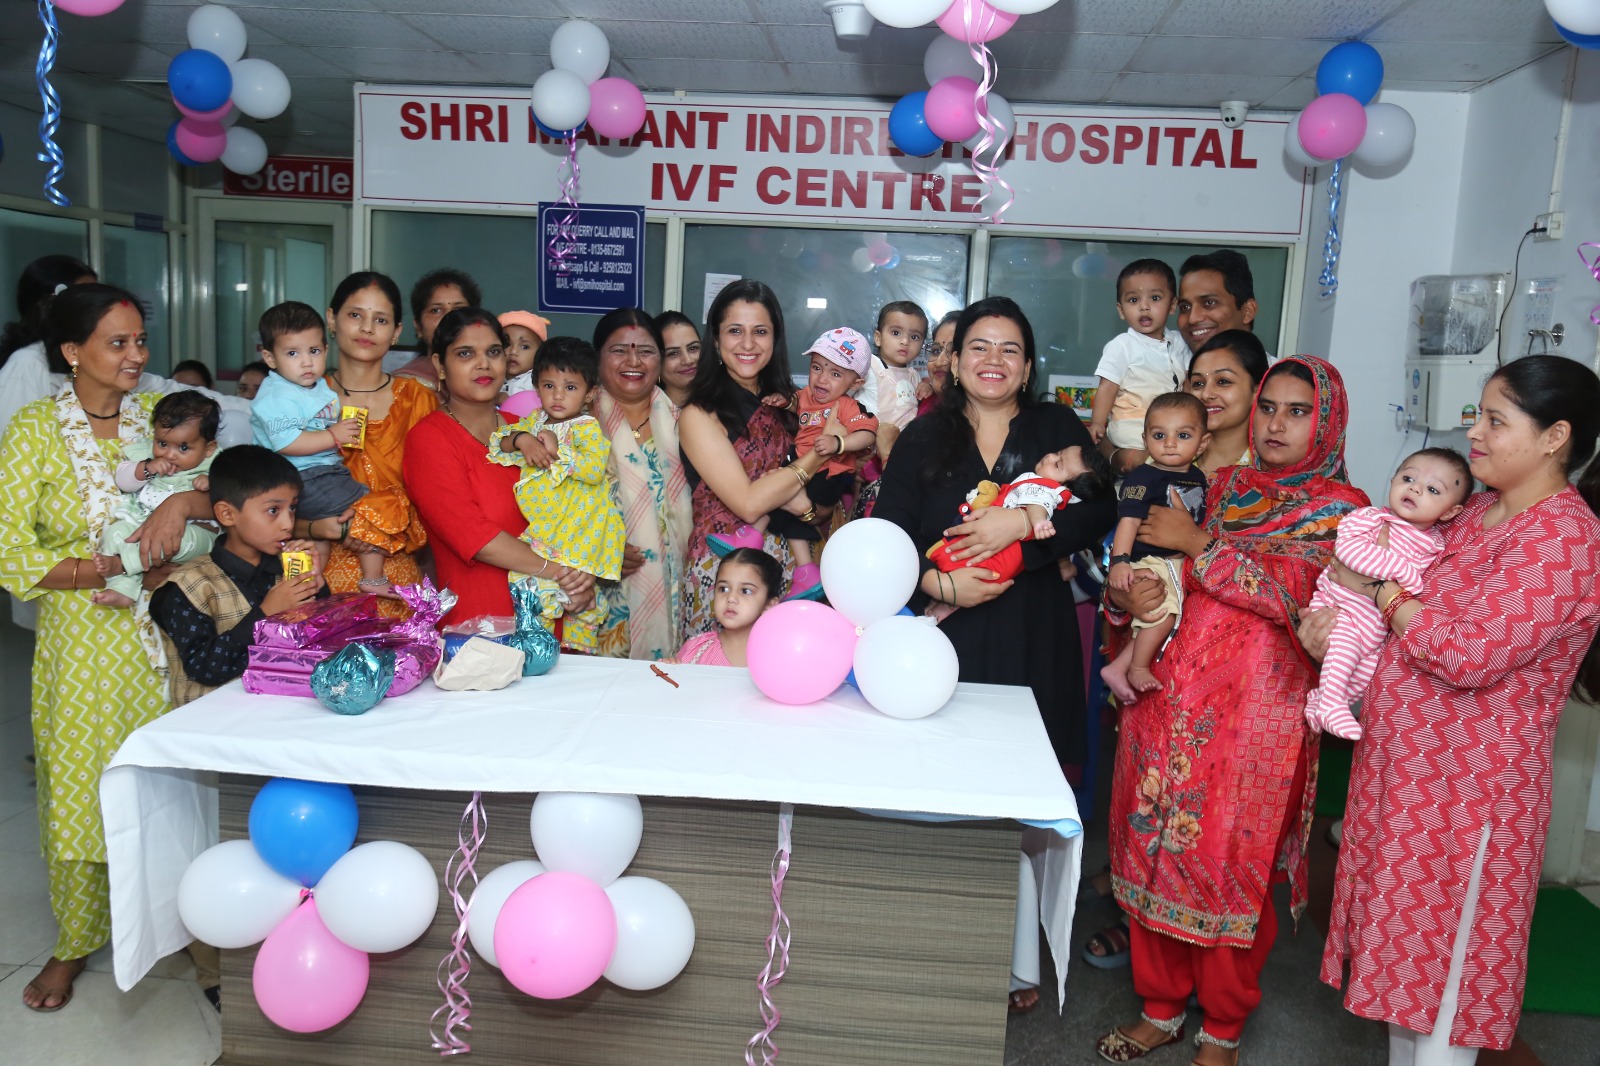 श्री महंत इन्दिरेश अस्पताल के आईवीएफ विभाग में विश्व आईवीएफ दिवस धूमधाम के साथ मनाया गया